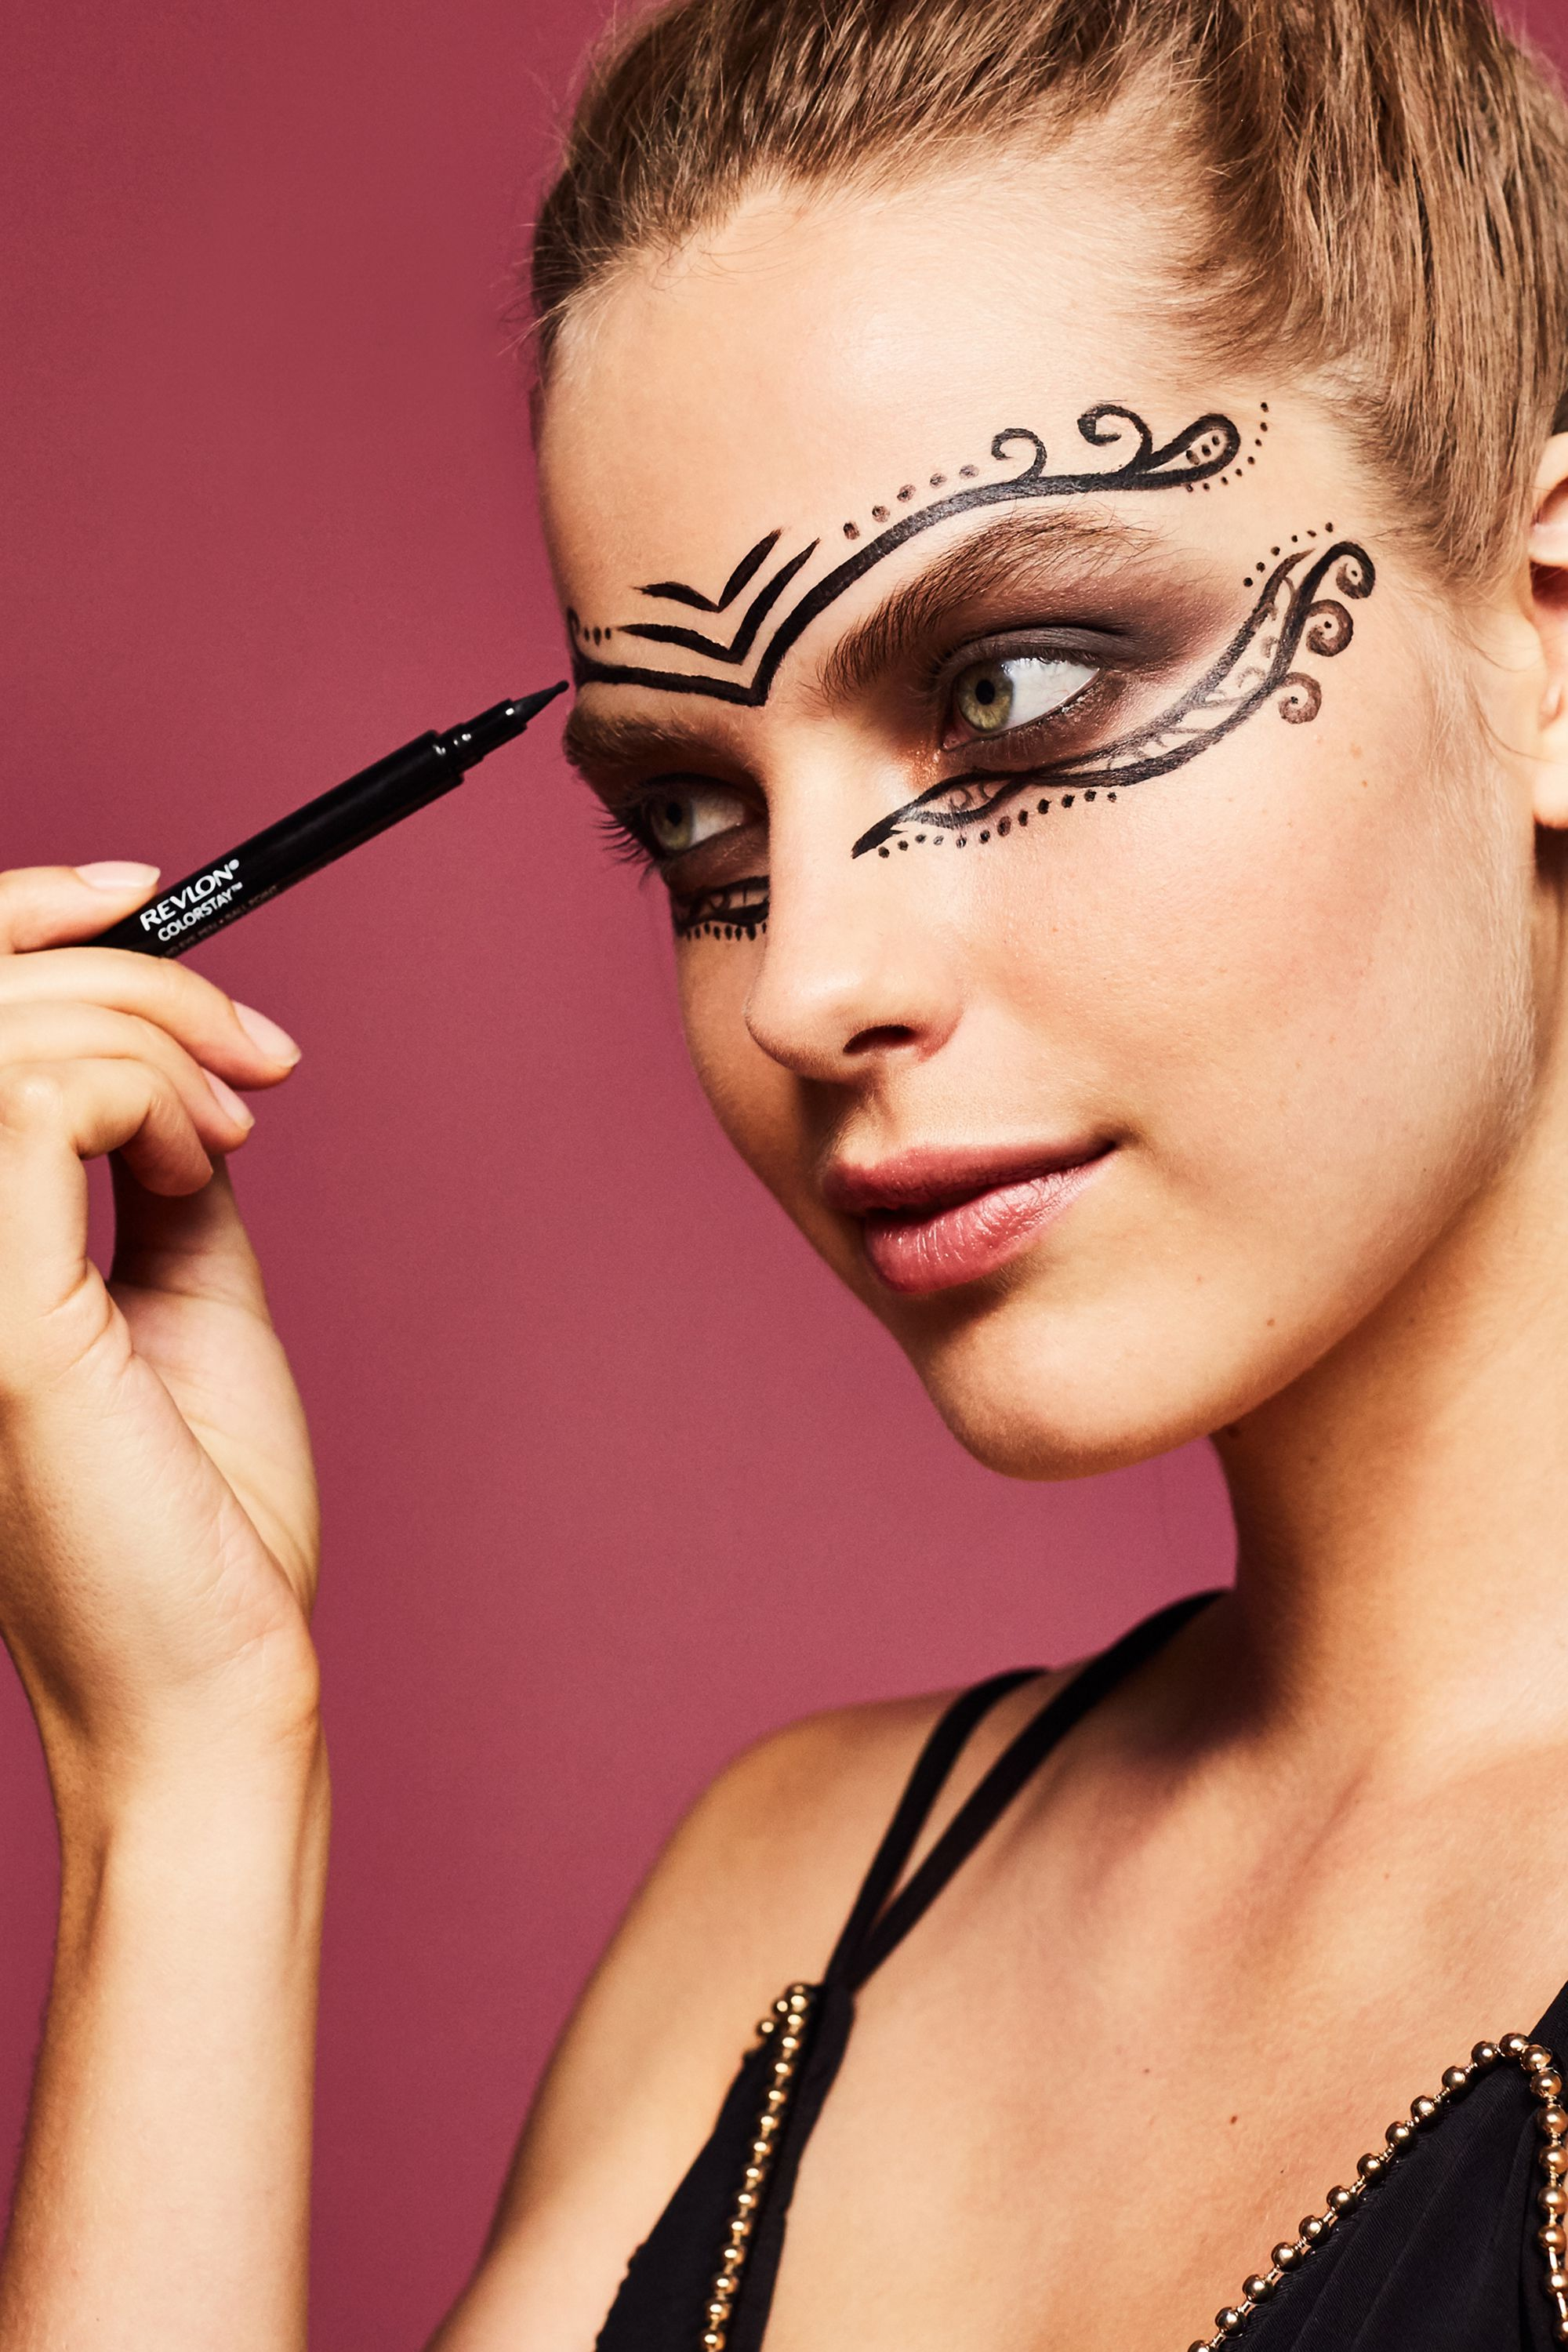 Ball Eye Makeup 3 Halloween Masks You Can Do With Makeup Diy Makeup Eye Masks For